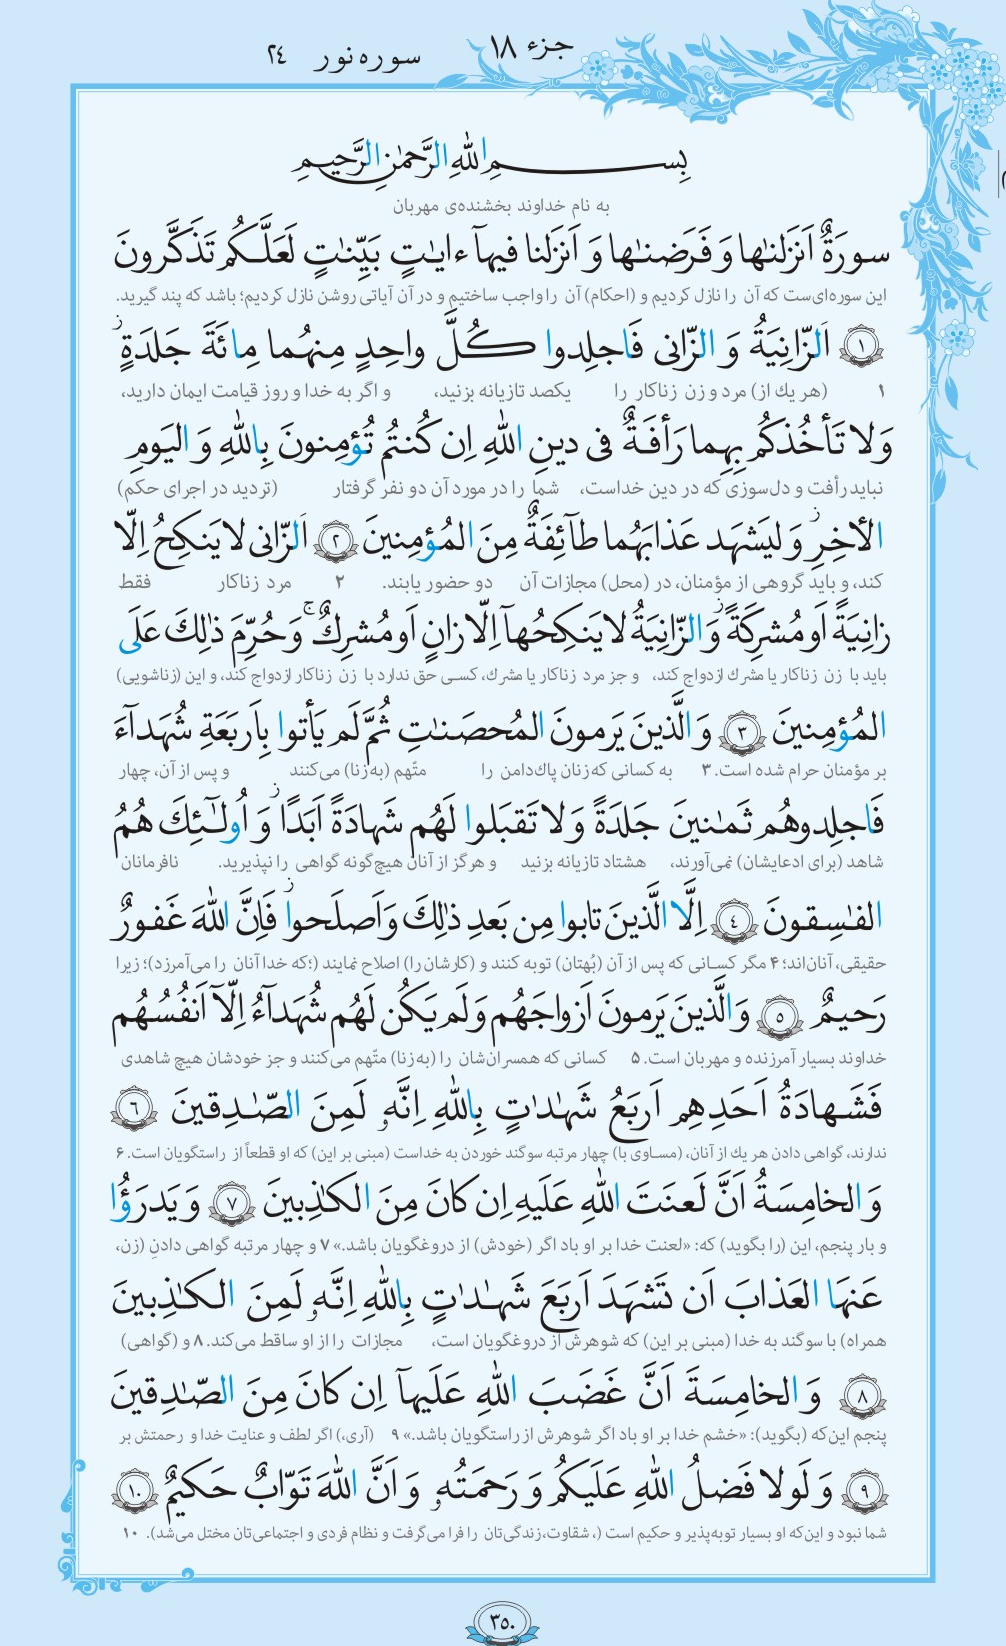 درباره پاکدامنی در صفحه 350 قرآن بخوانید + فیلم، متن و مفاهیم 2